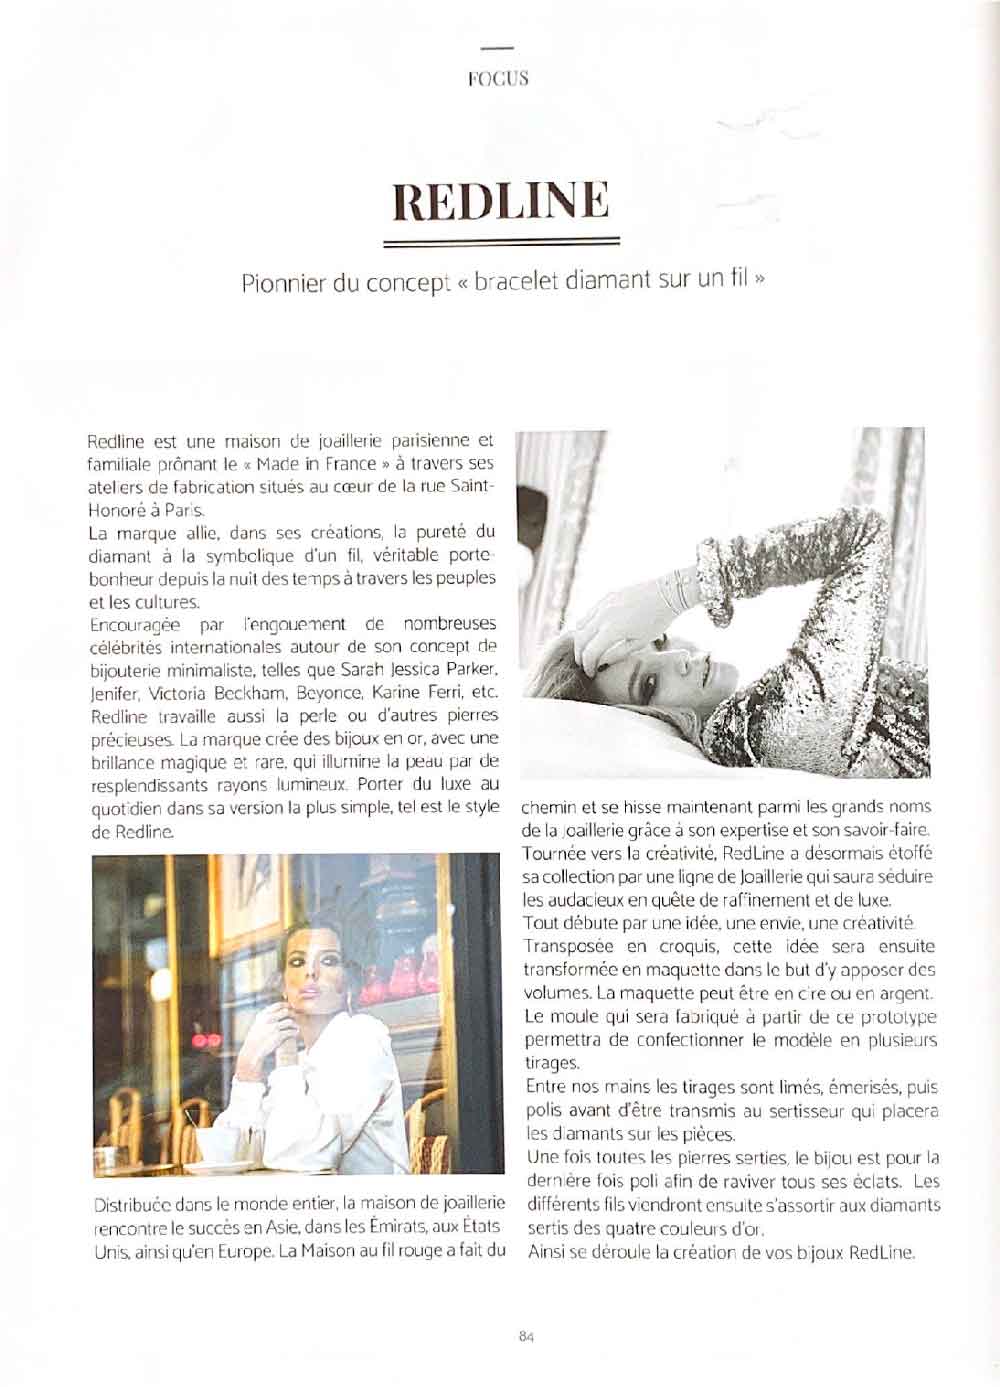 Redline bijou Paris